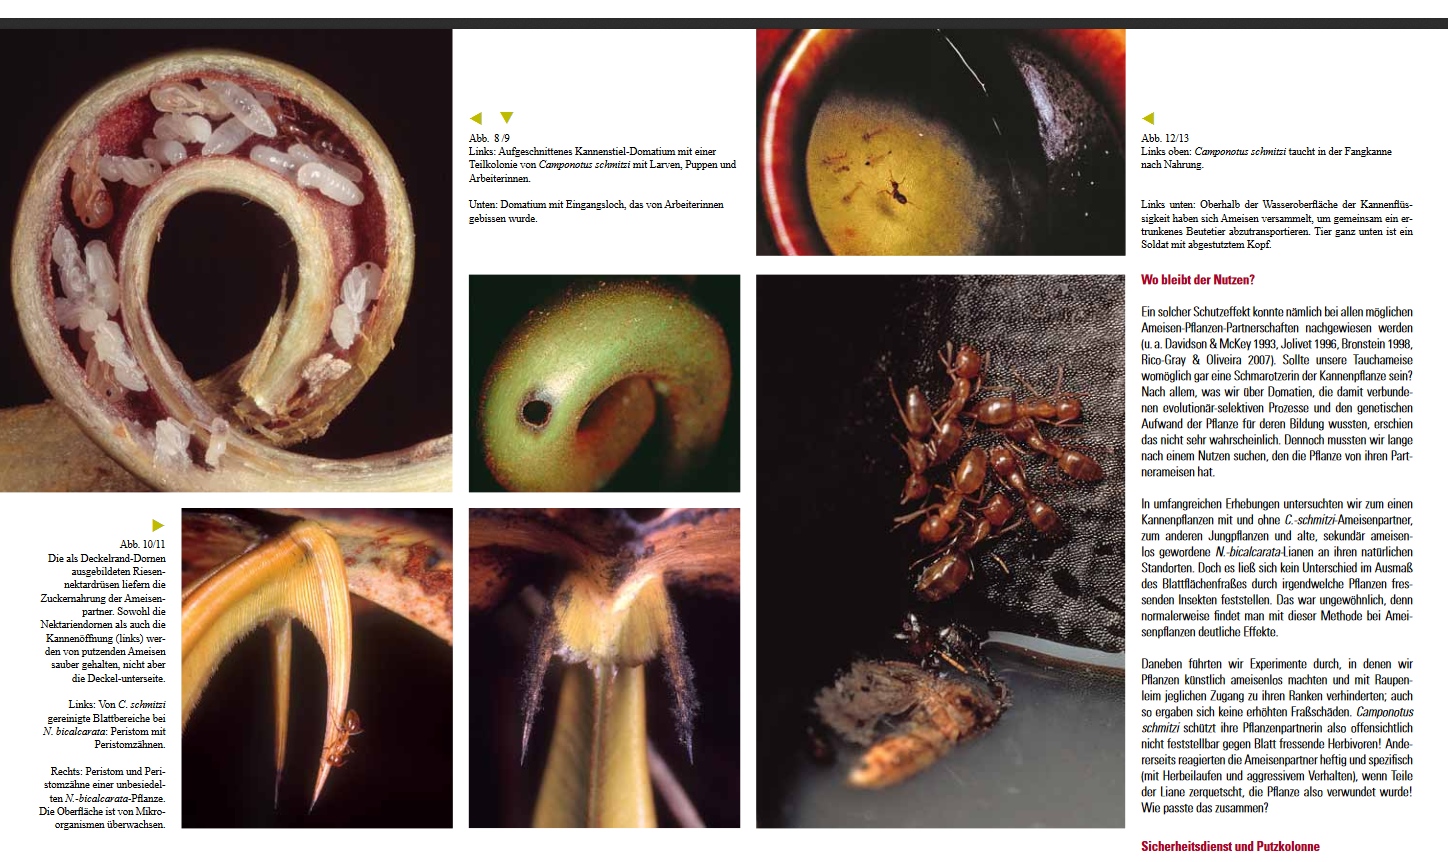 Ameisen und Nepenthes in Symbiose: Screenshot aus Senckenberg - natur - forschung - museum 143/2013